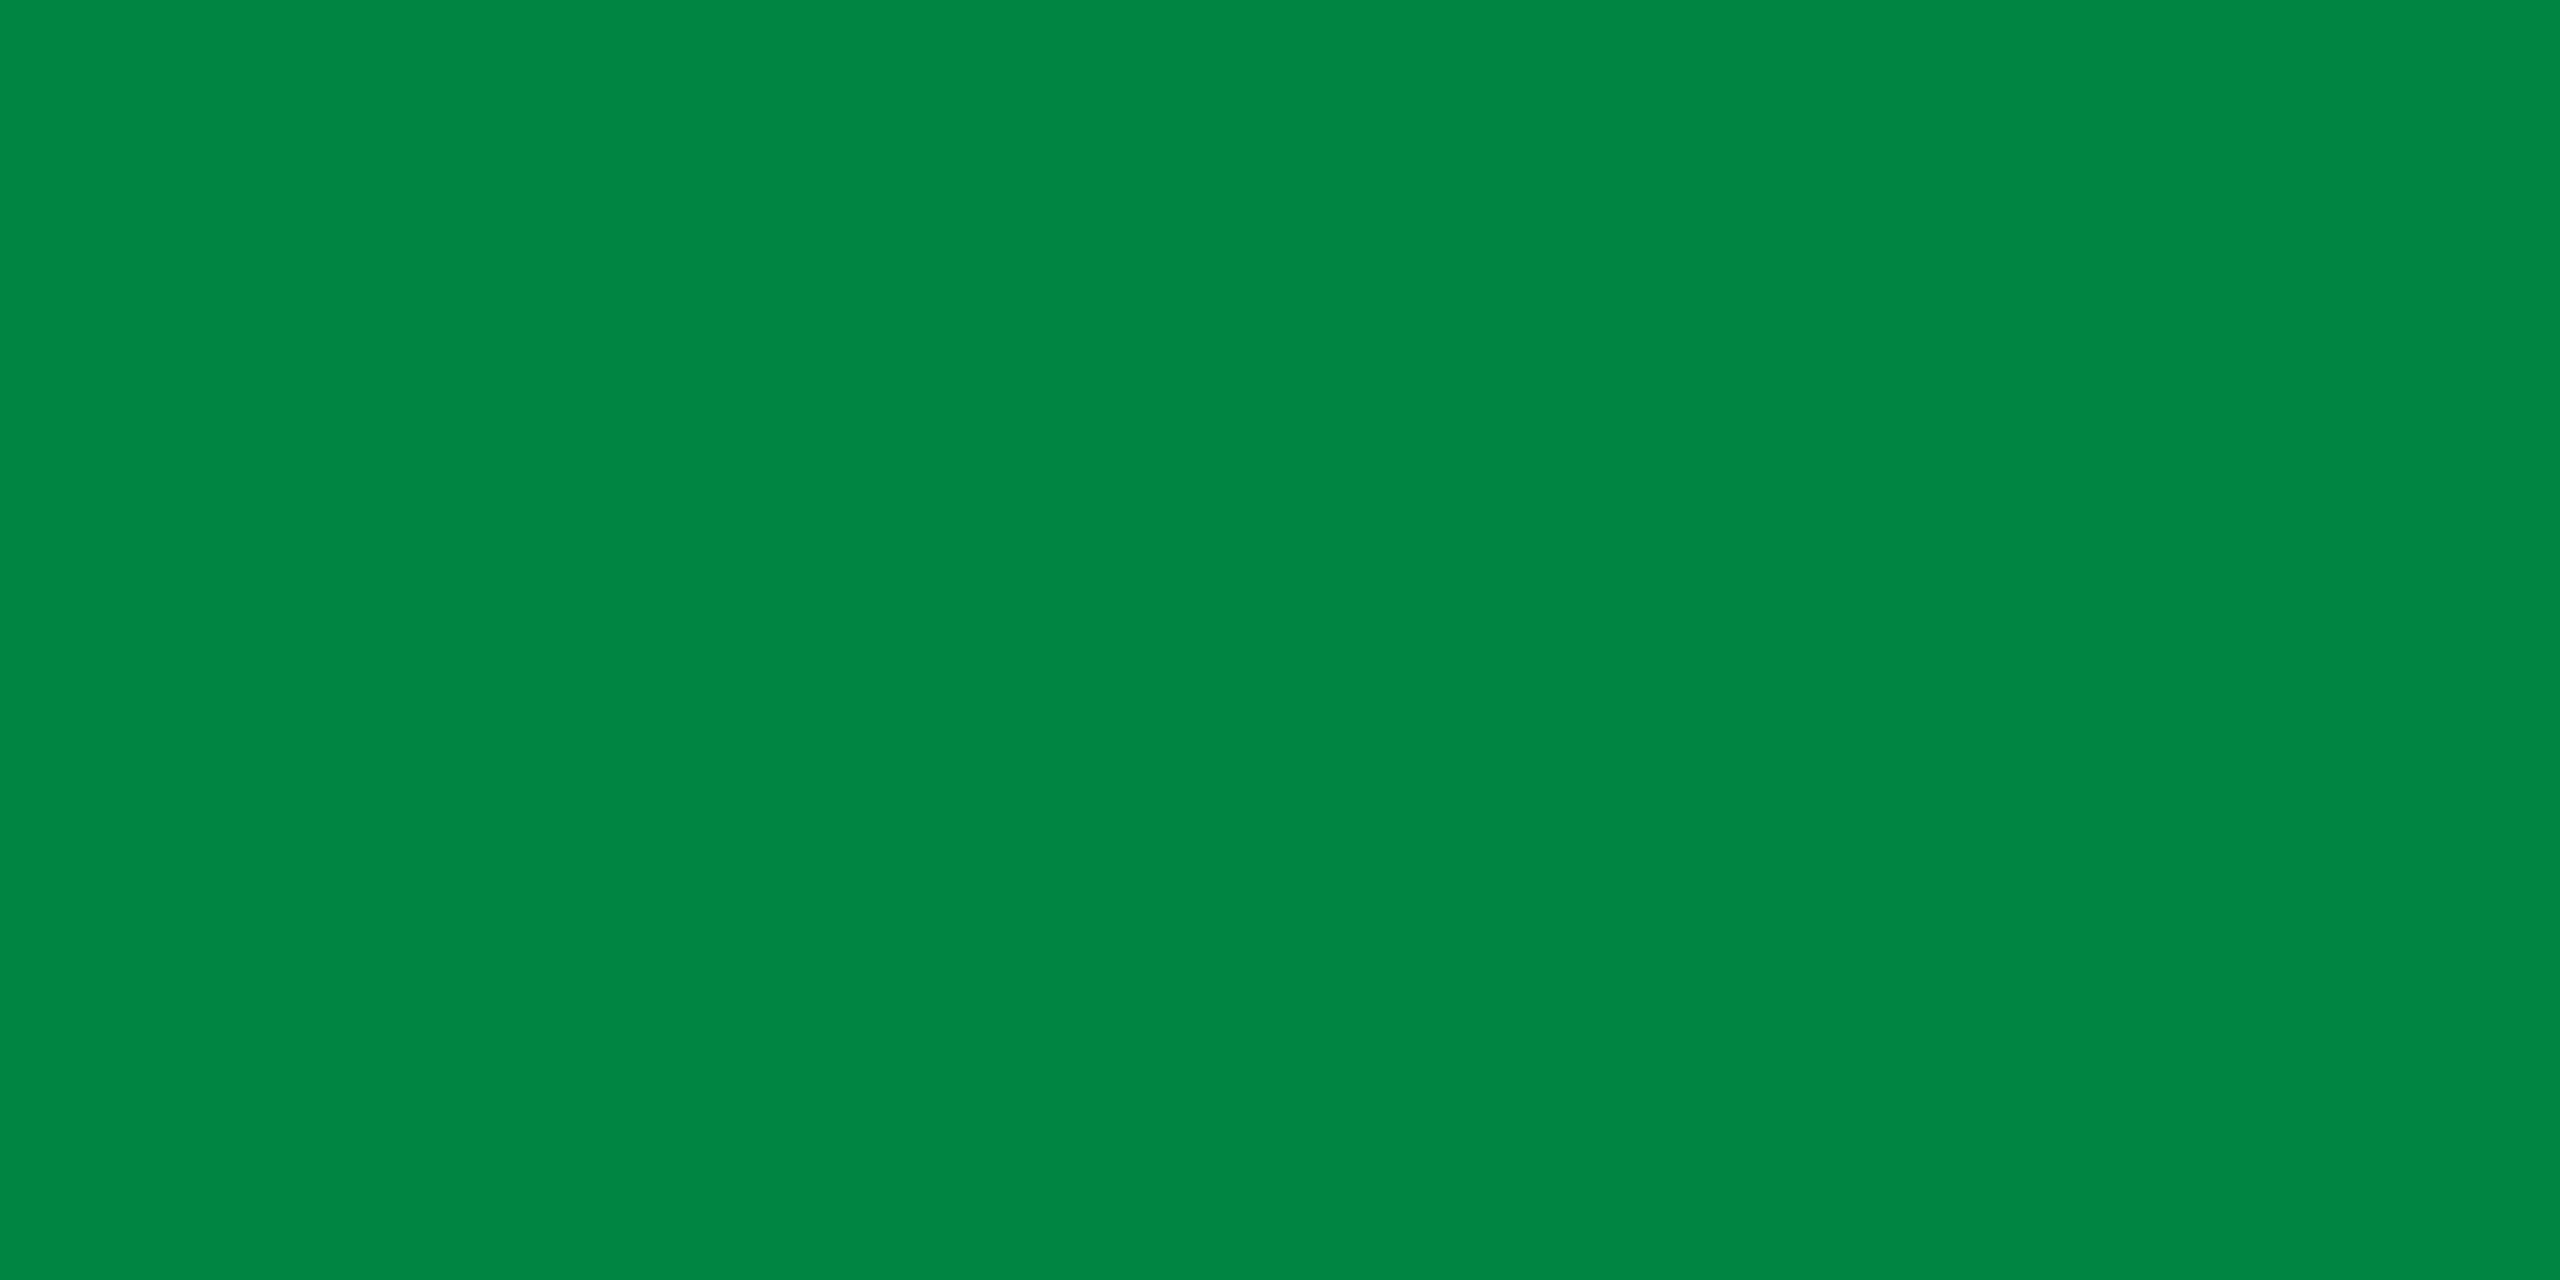 Flag of Great Socialist People's Libyan Arab Jamahiriya